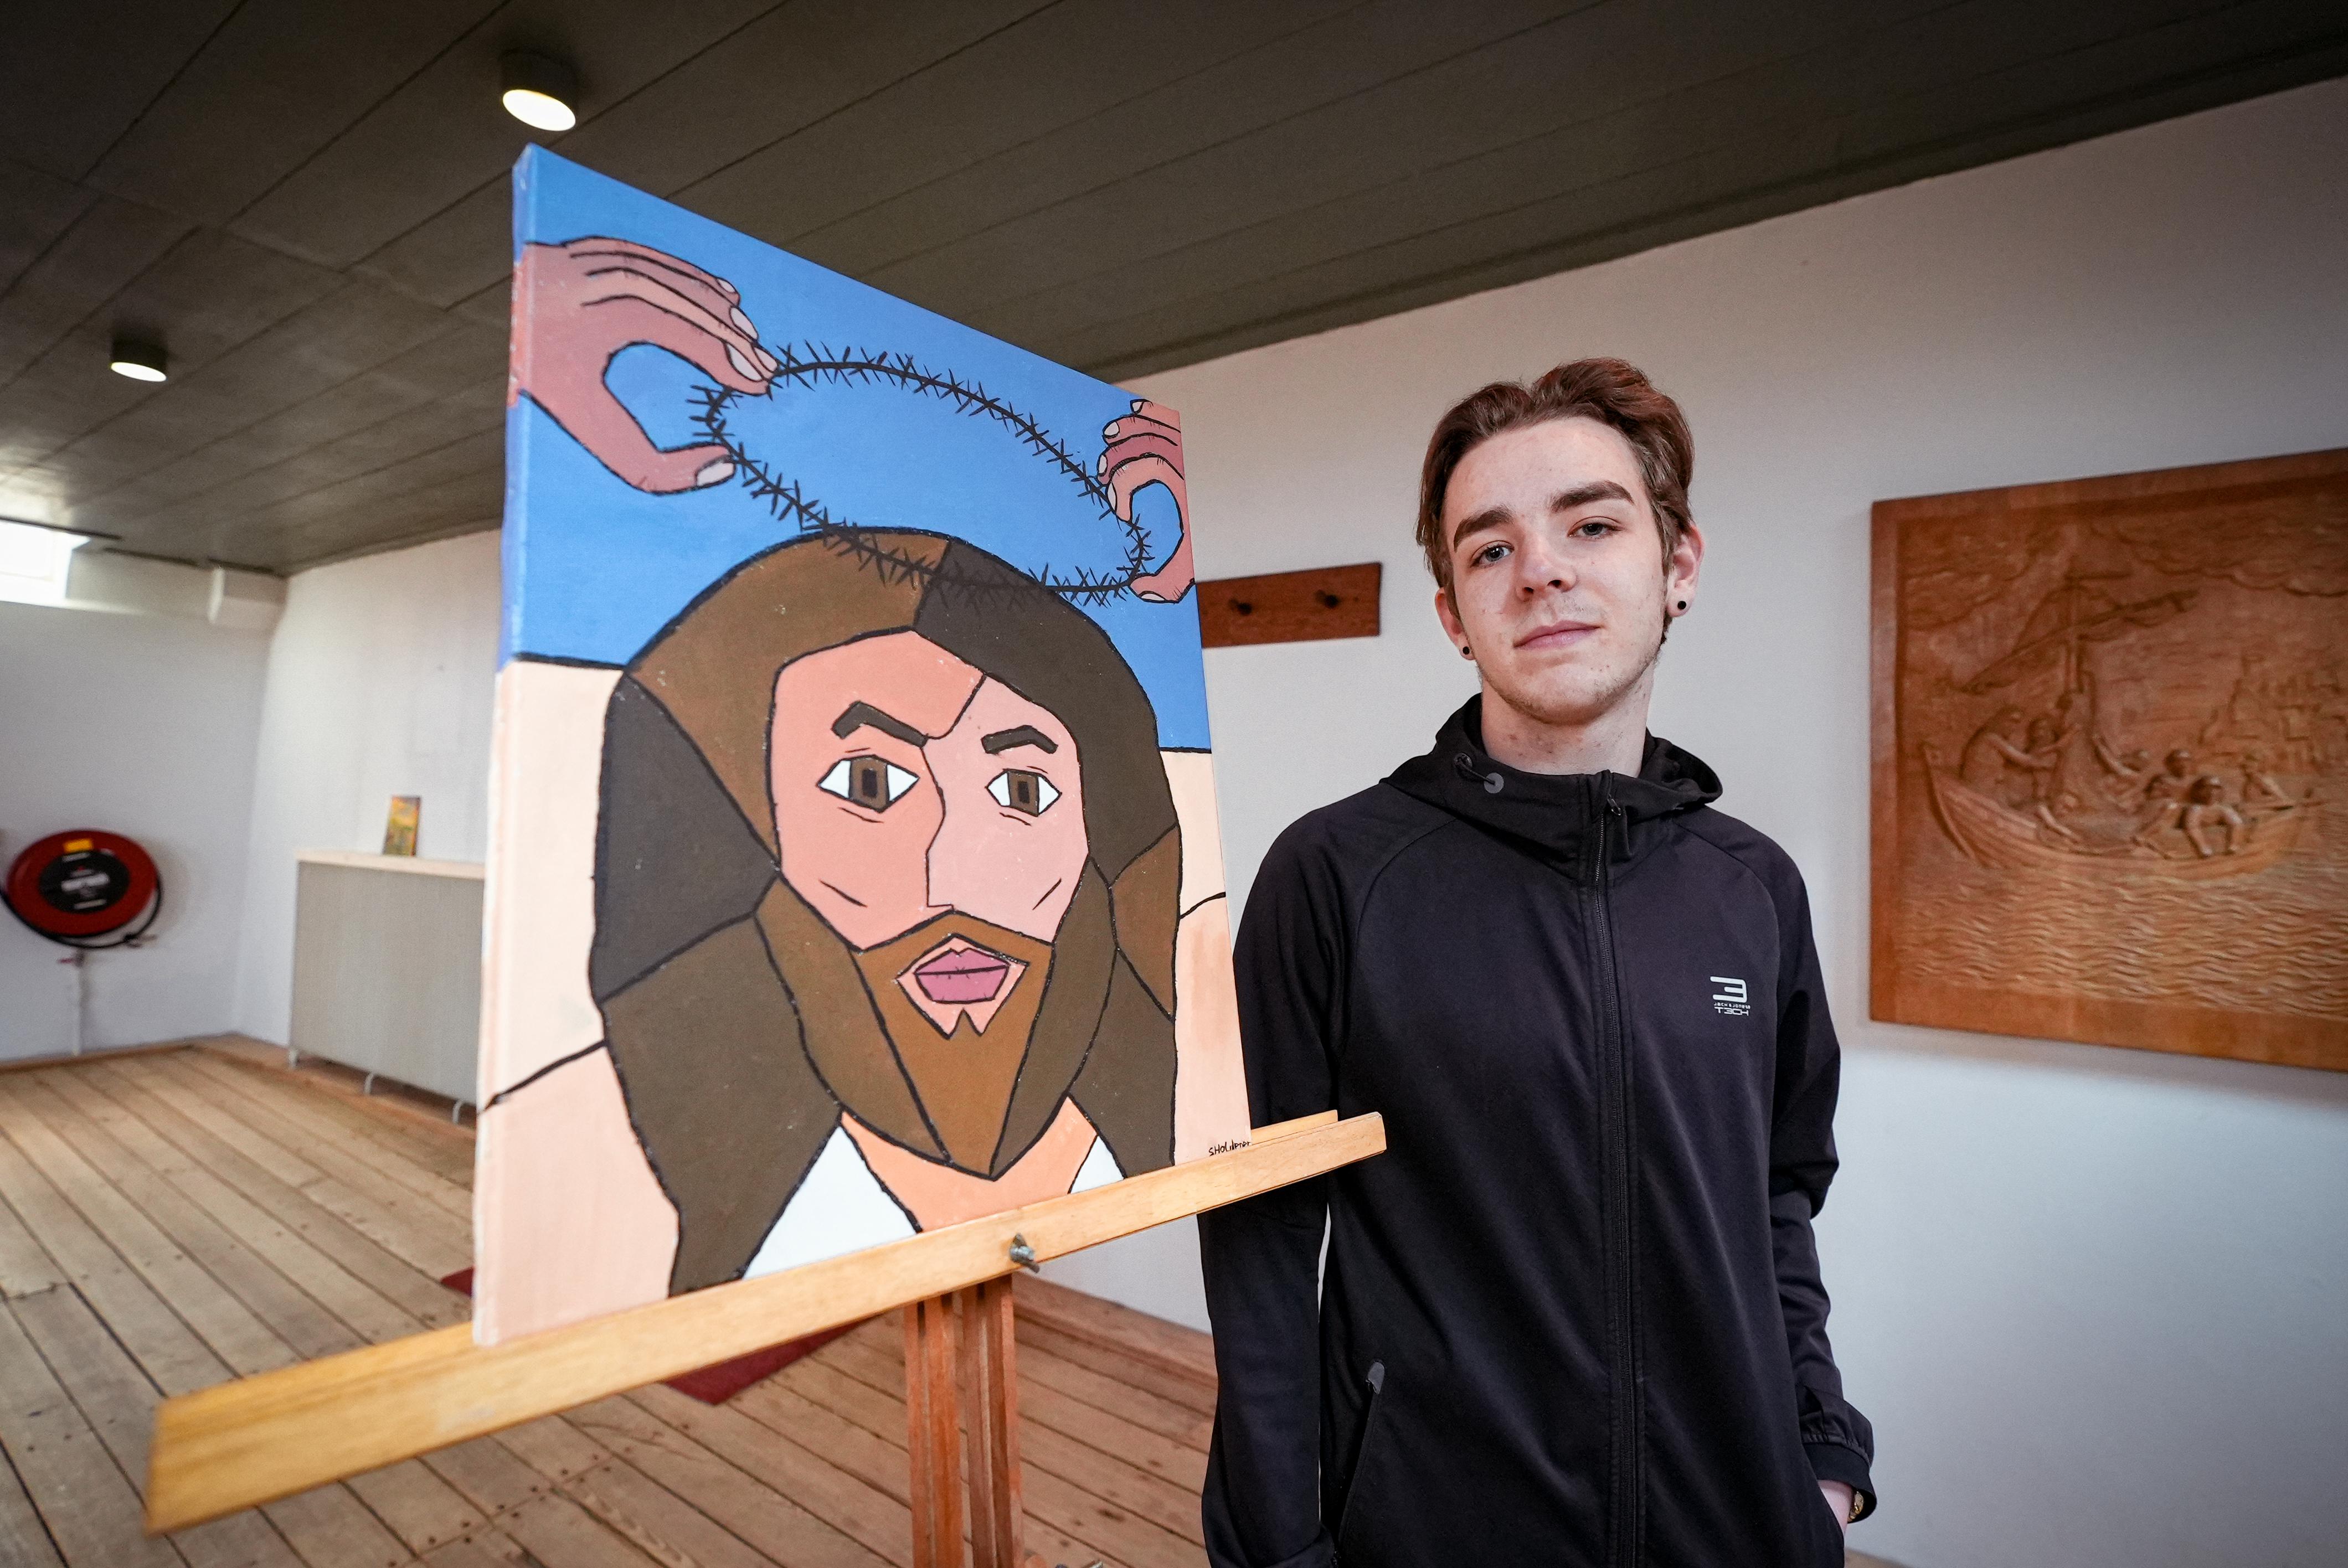 Jonge kerkgangers maken kunstwerken rond het Paasverhaal Niemand weet hoe Jezus er heeft uitgezien Noordhollandsdagblad afbeelding